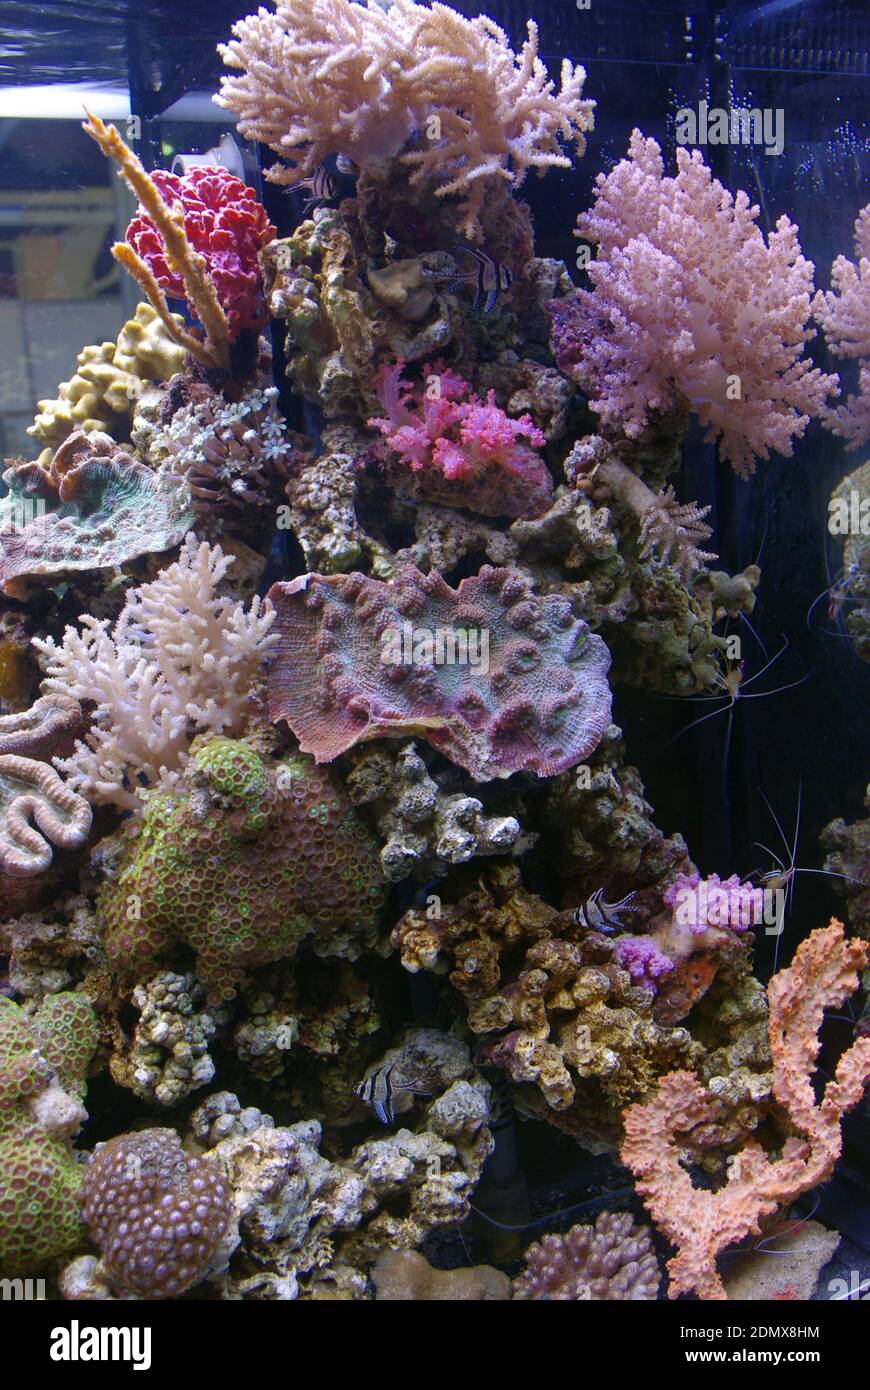 Acquario marino tropicale con coralli sassosi e morbidi, invertebrati e pesci Foto Stock